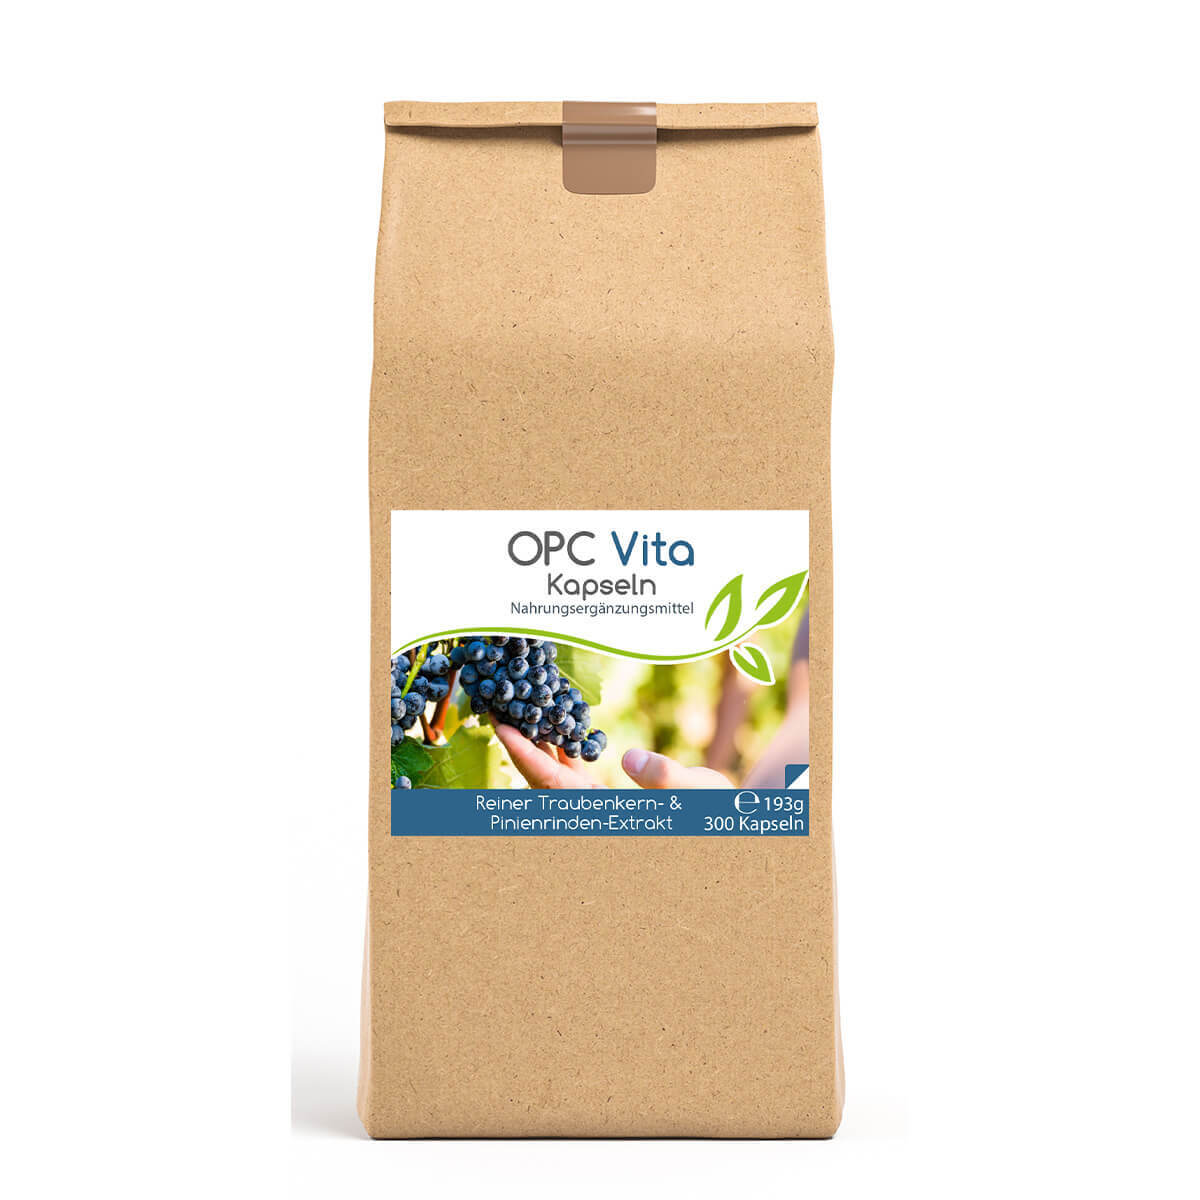 OPC Vita 300 Kapseln | Traubenkern- und Pinienrinden-Extrakt Vorratsbeutel